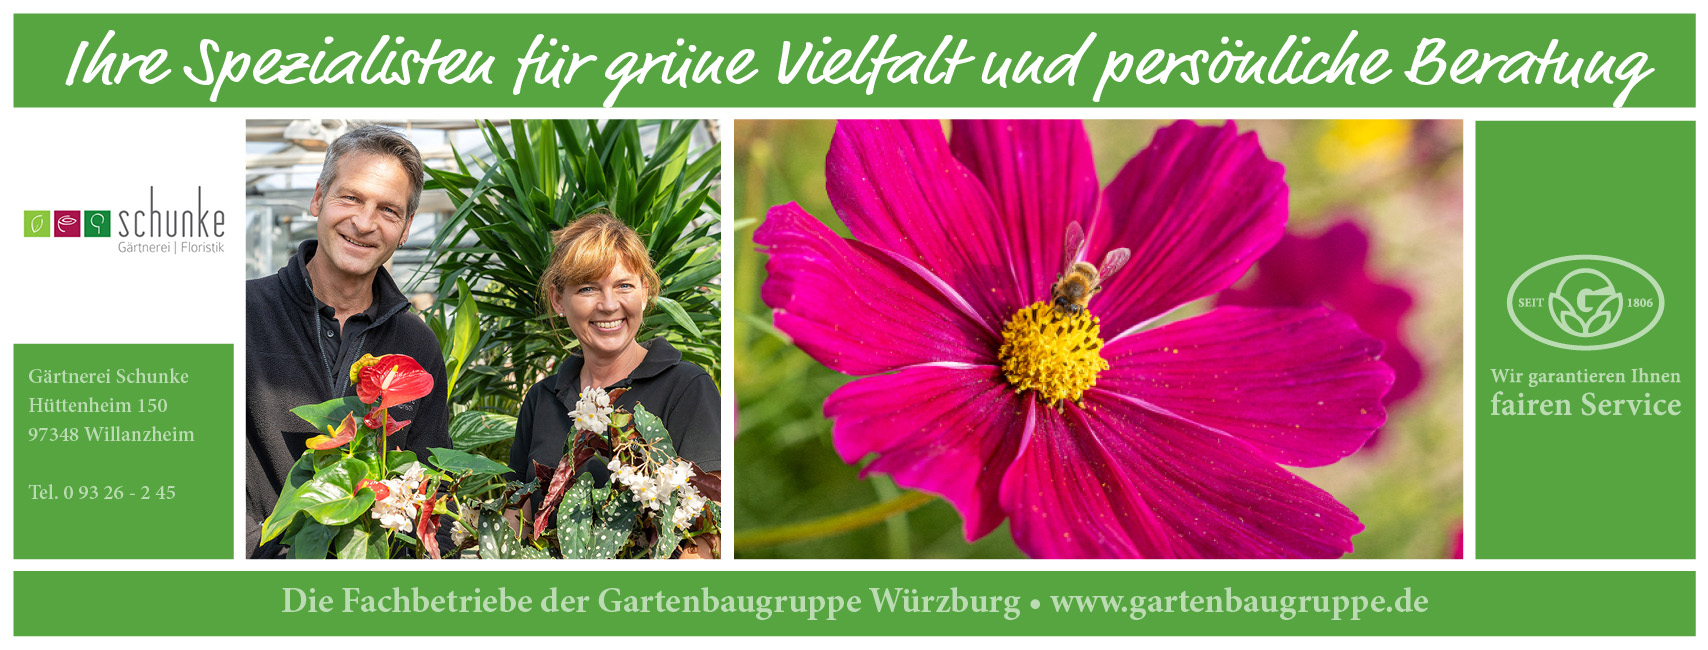 Die Gartenbaugruppe Wuerzburg stellt sich vor: Gärtnerei Schunke